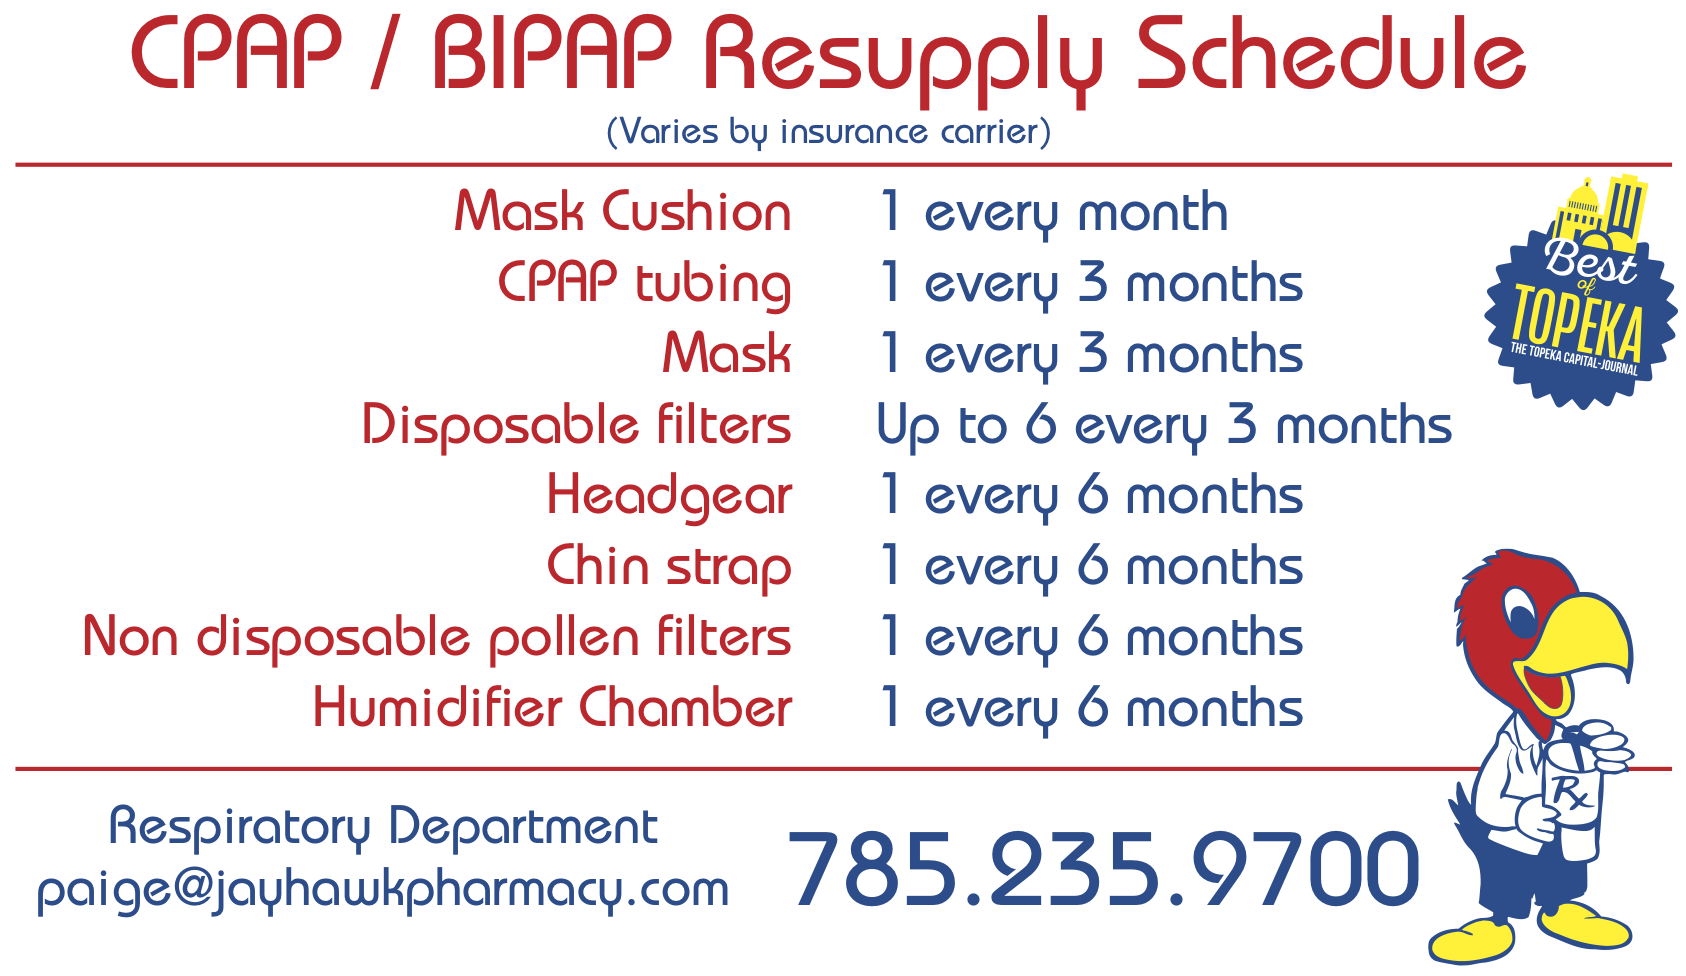 CPAP Resupply schedule